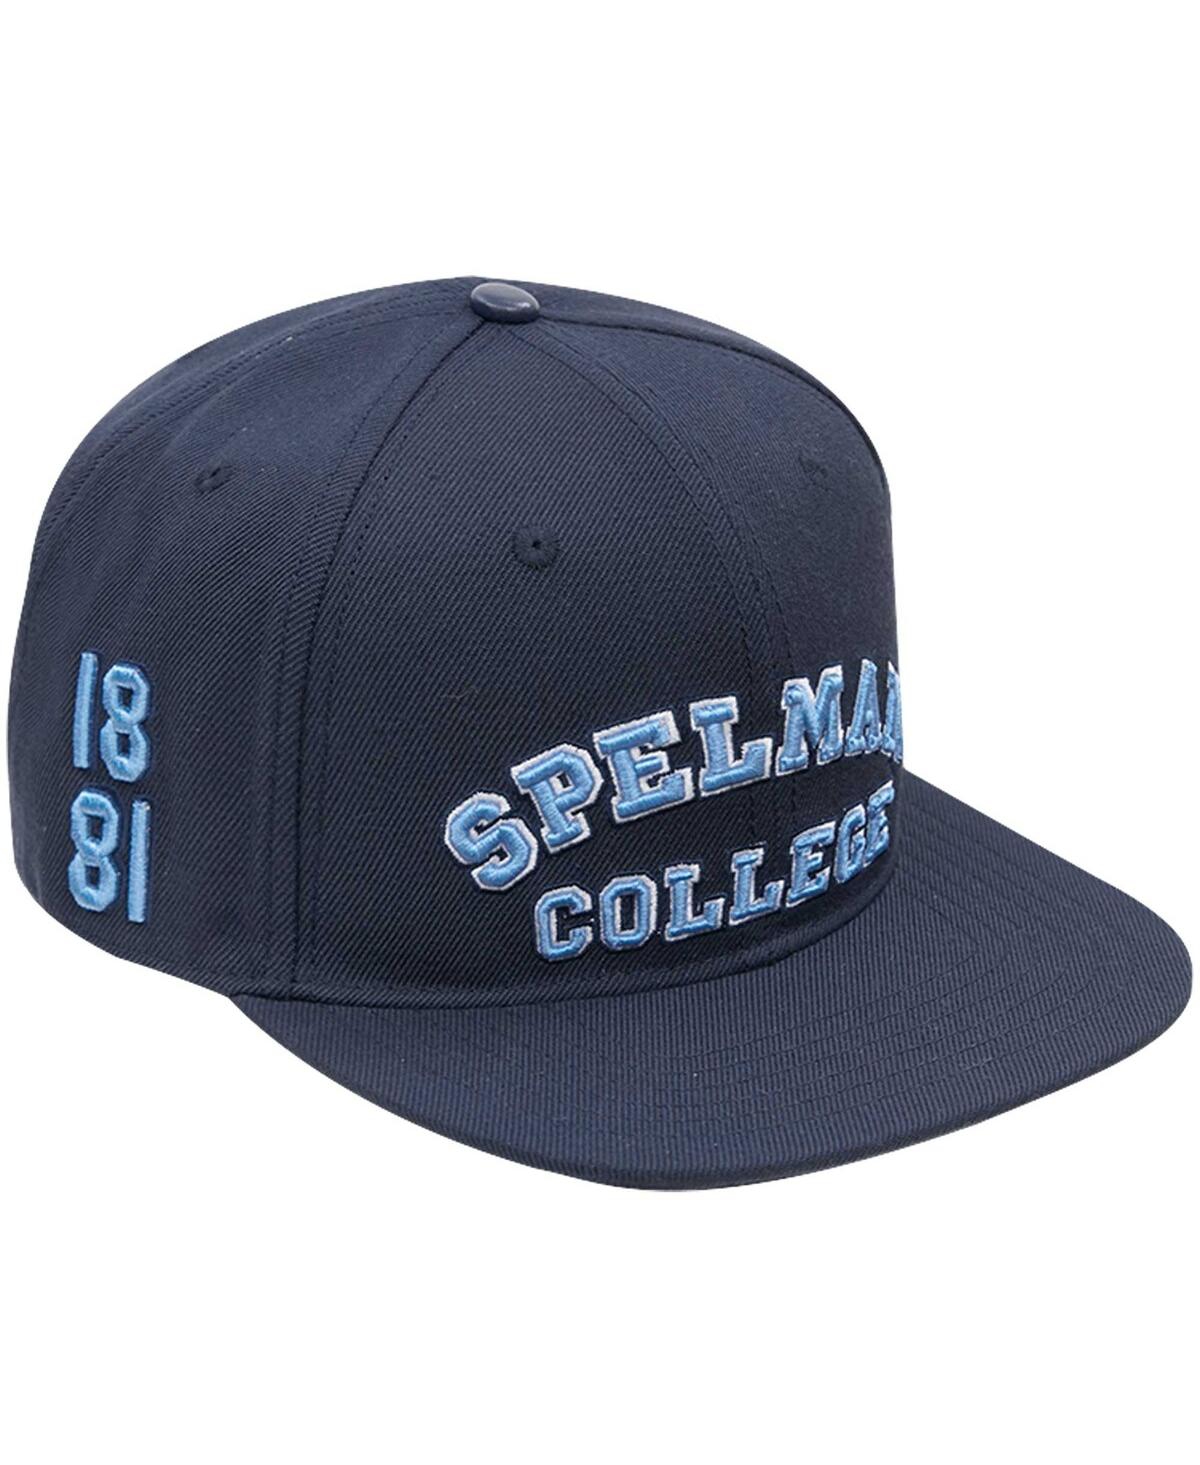 Shop Pro Standard Men's  Navy Spelman College Jaguars Evergreen Spelman College Snapback Hat